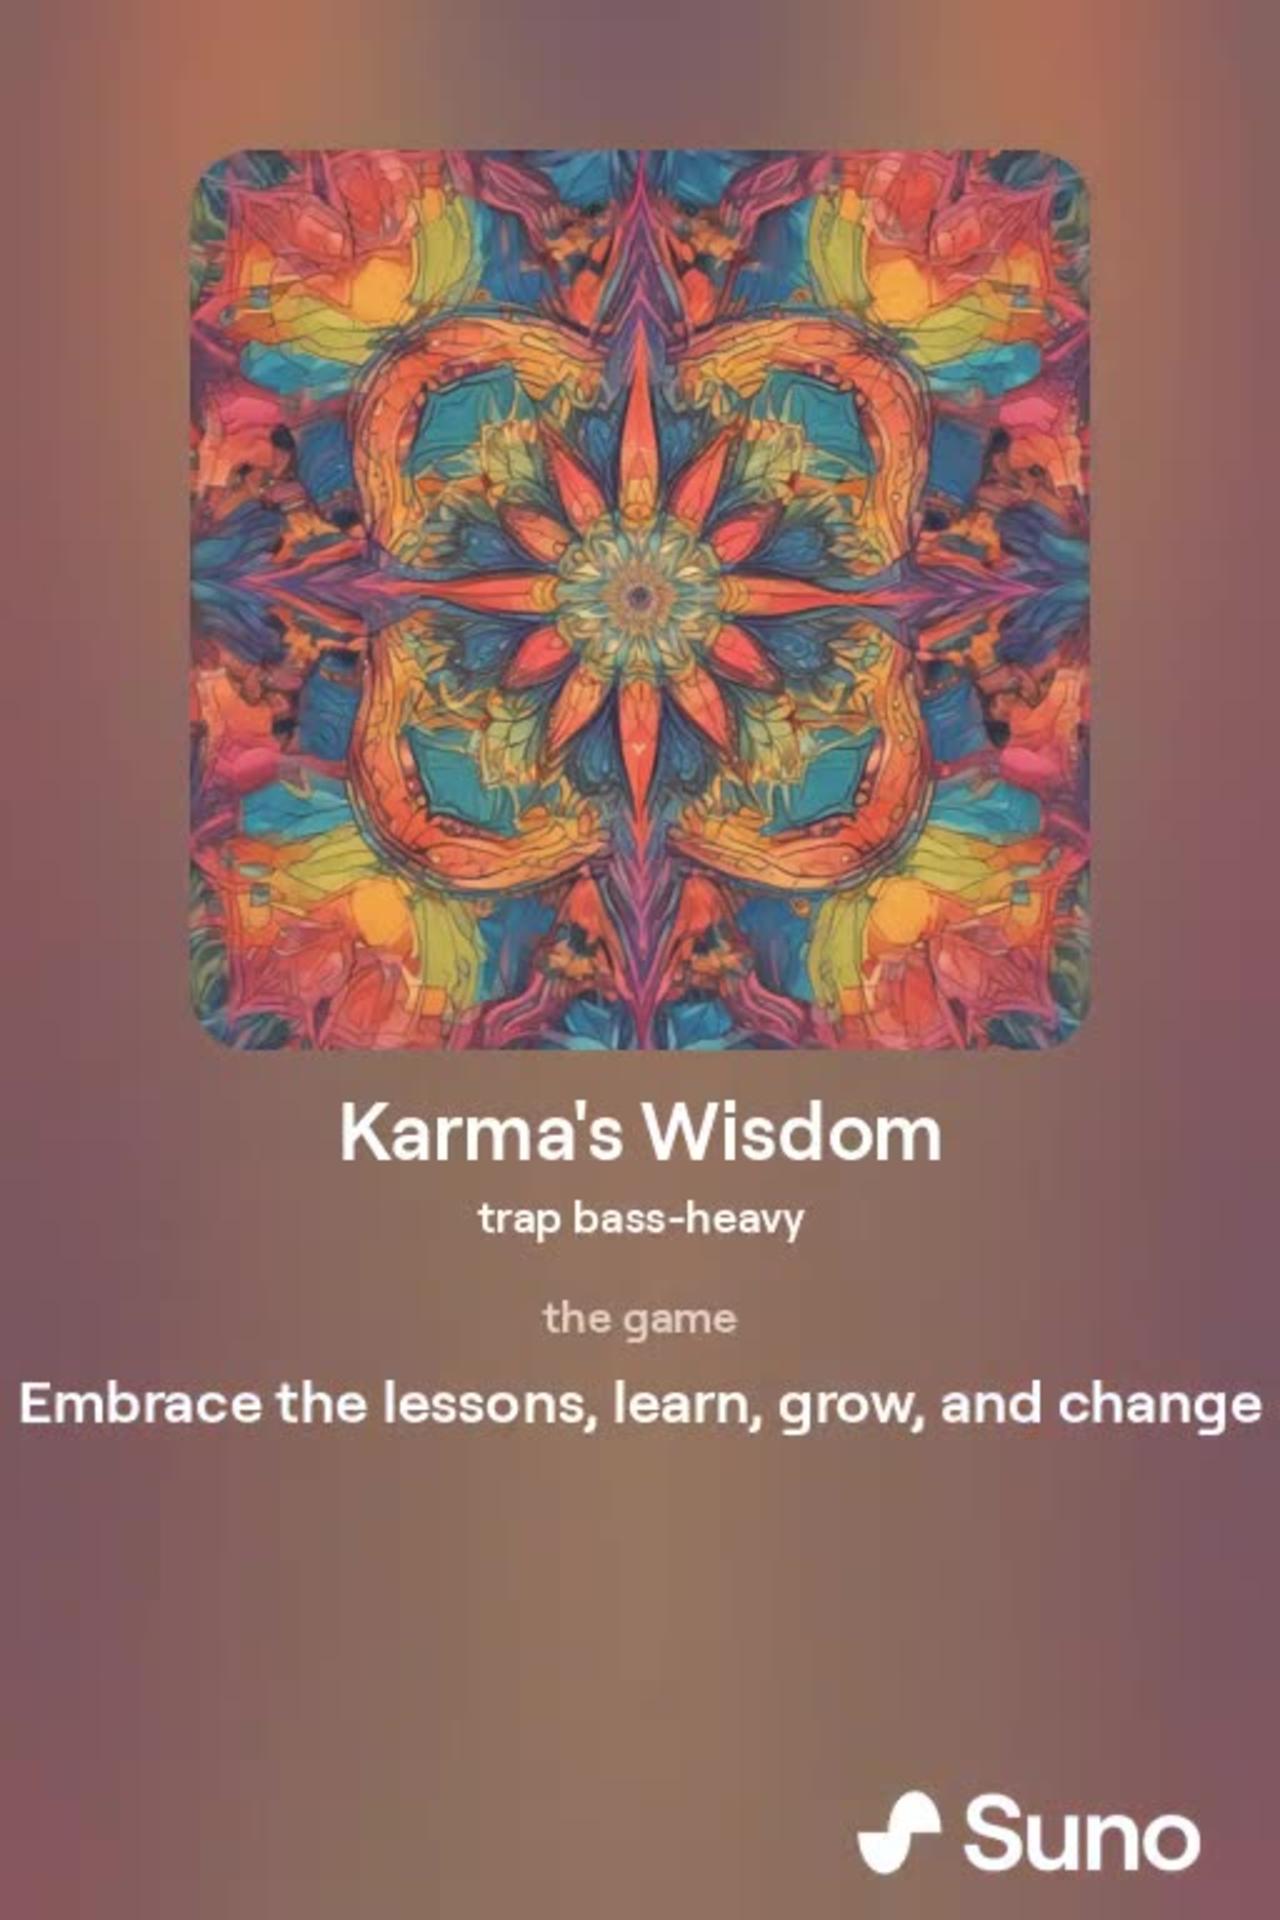 Karmas wisdom